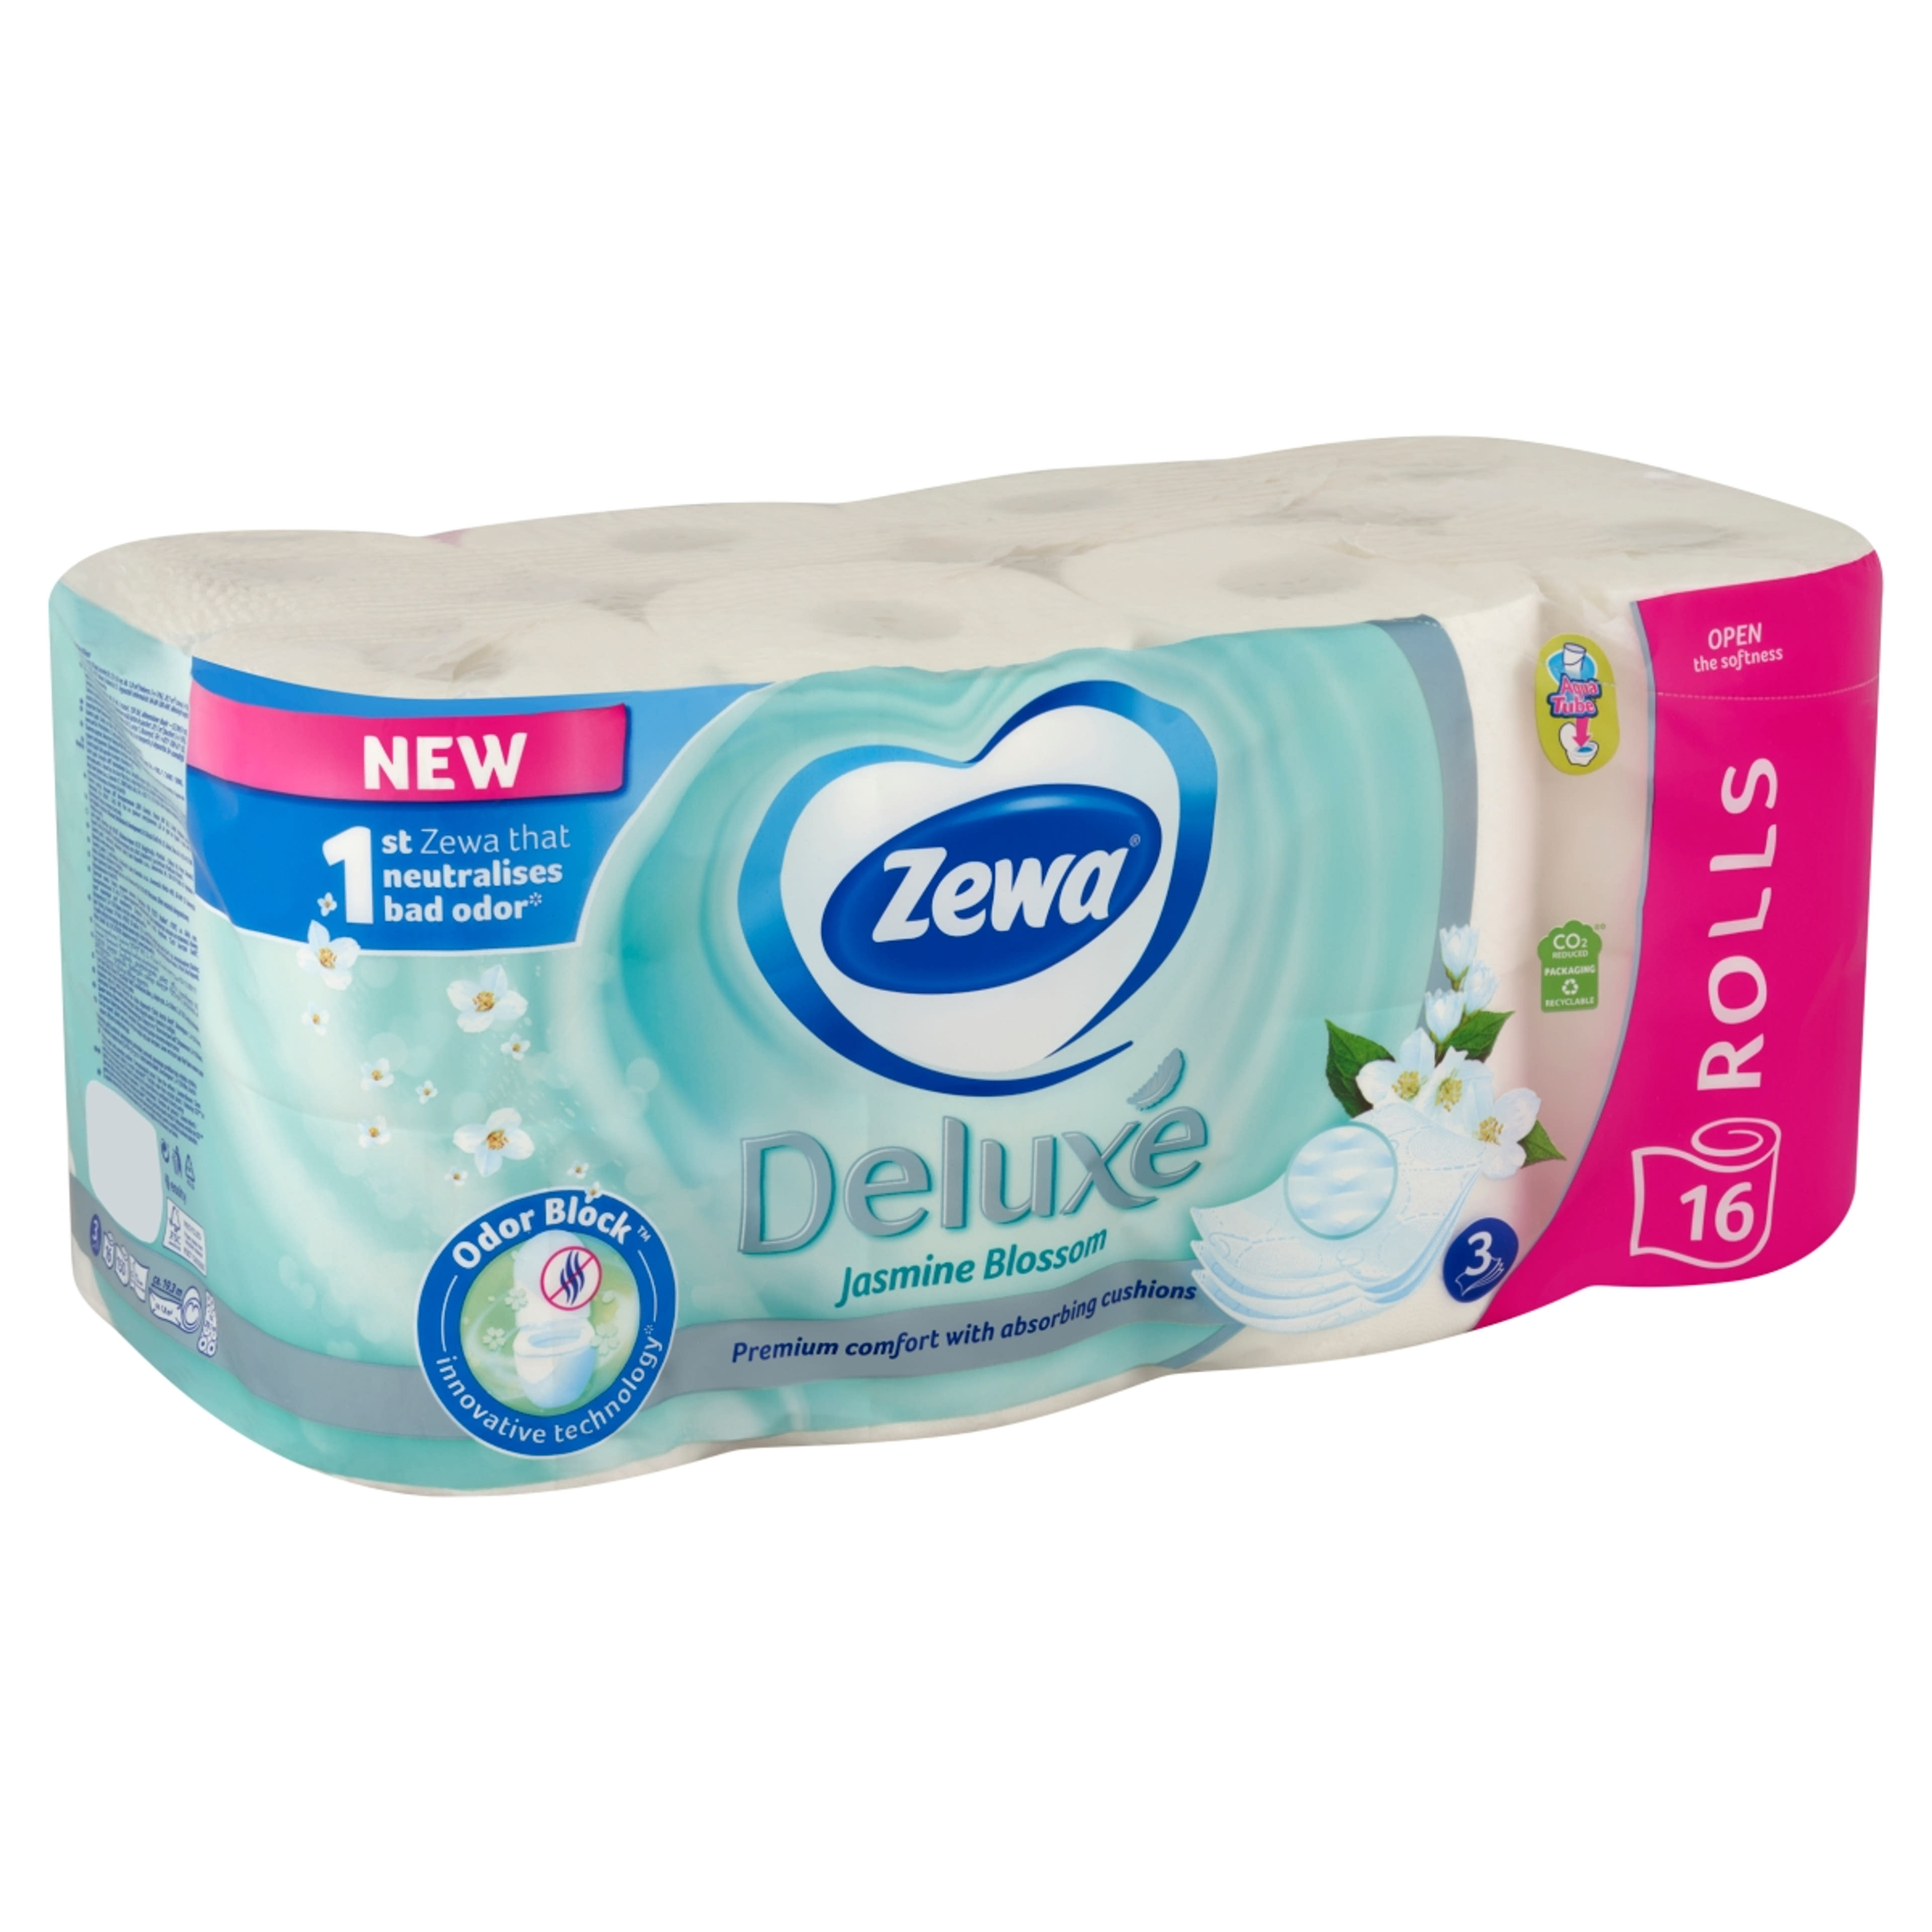 Zewa Deluxe Jasmine Blossom 3 rétegű toalettpapír - 16 tekercs-2